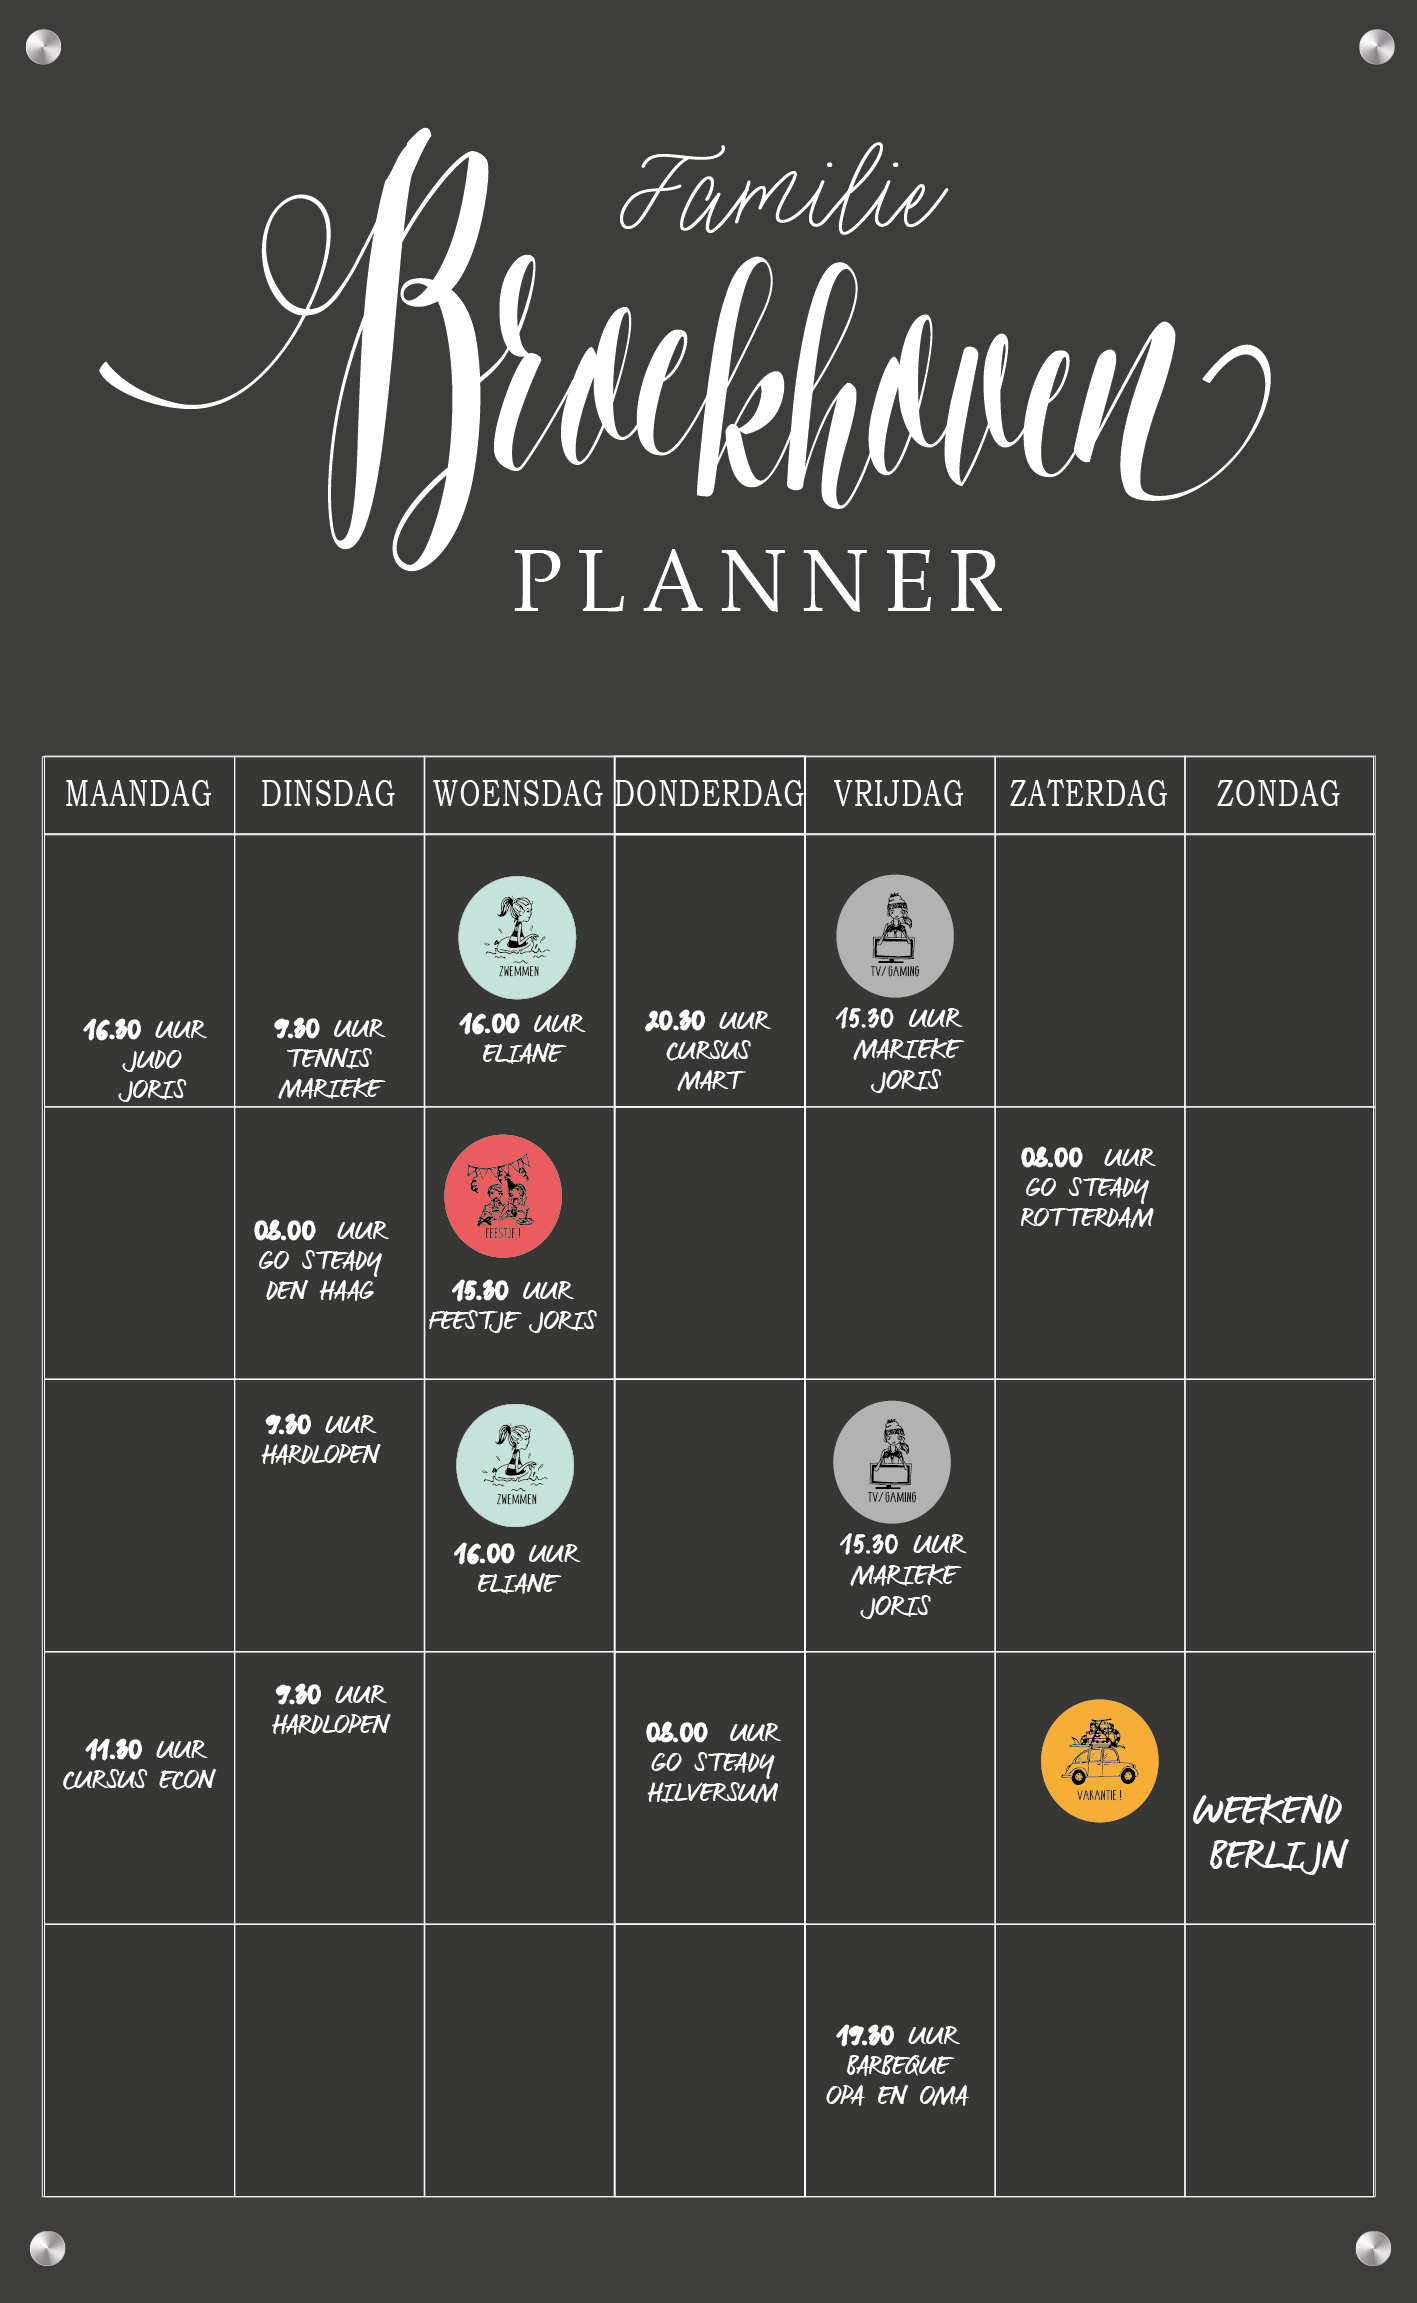 weekplanner/planbord/familieplanner > Favorietje